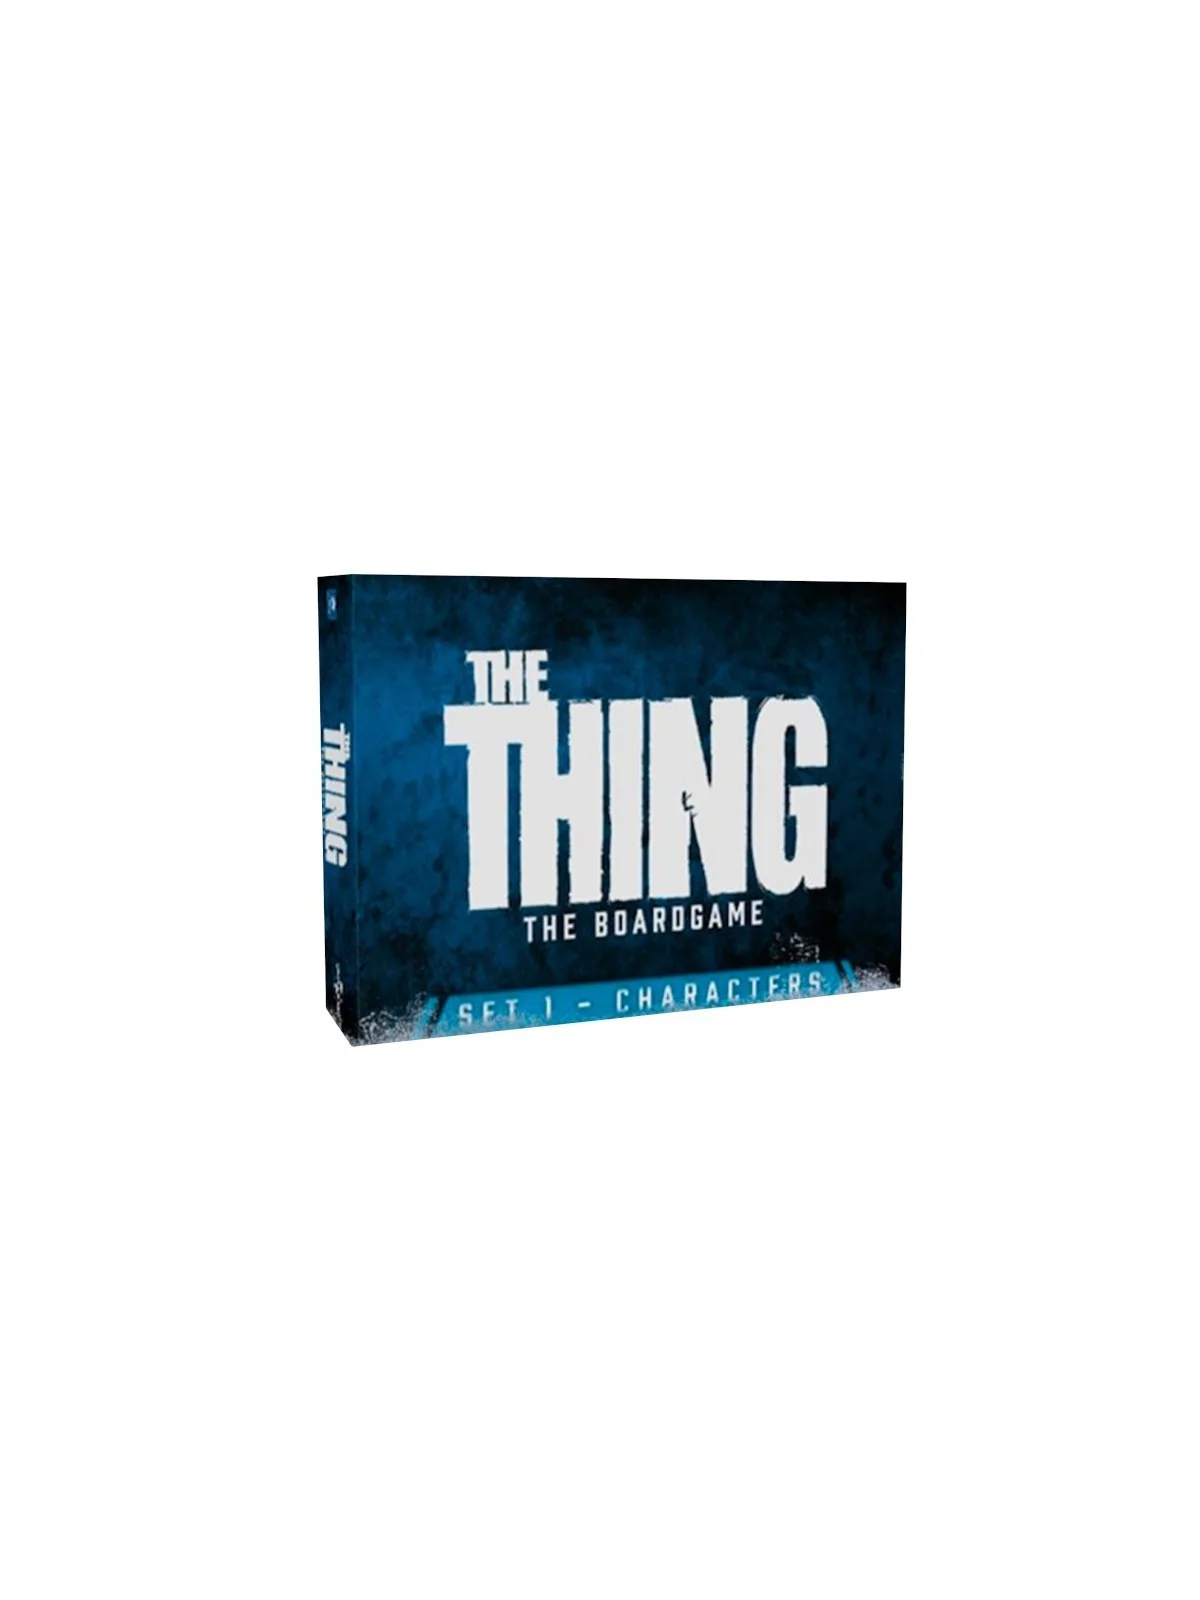 Comprar The Thing: Minis Humanos barato al mejor precio 26,95 € de Gen